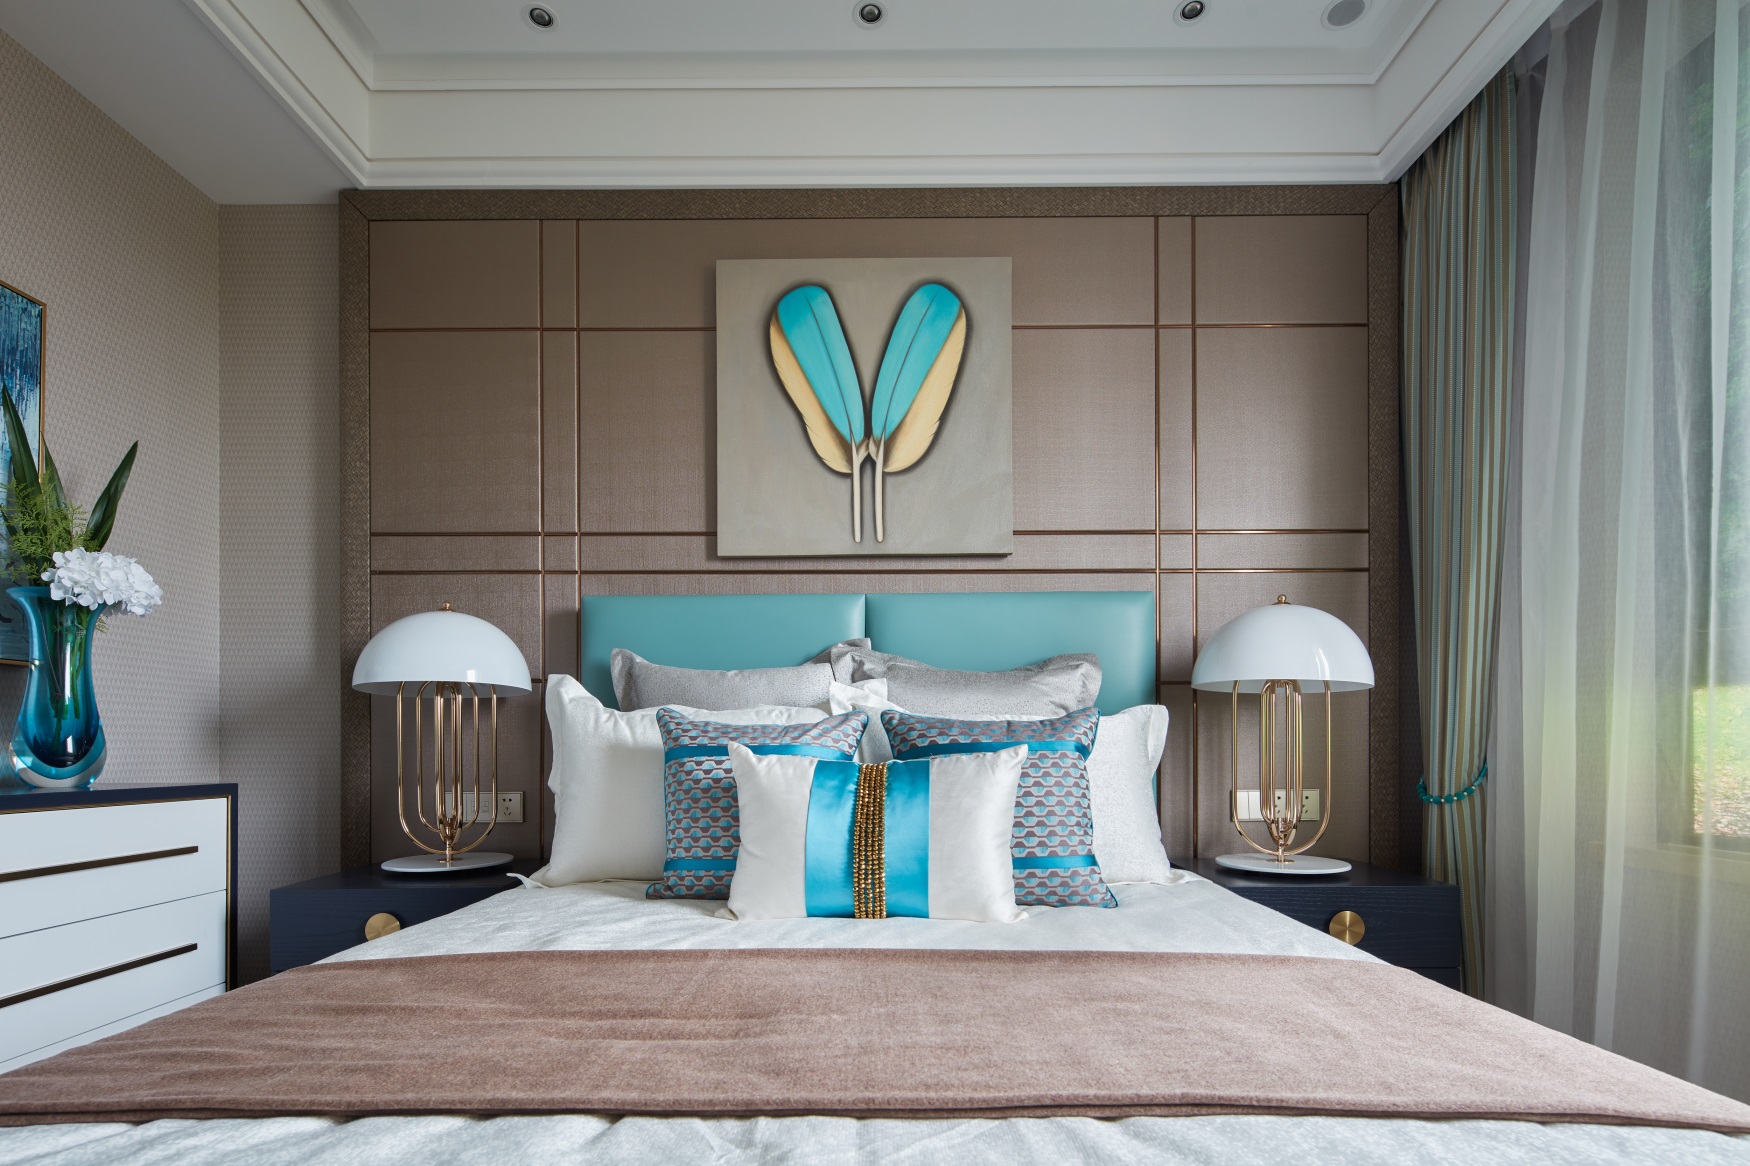 米色背景线条搭配同色系的床铺，床头加以蓝色点缀，令整个次卧空间弥漫着时尚之美。